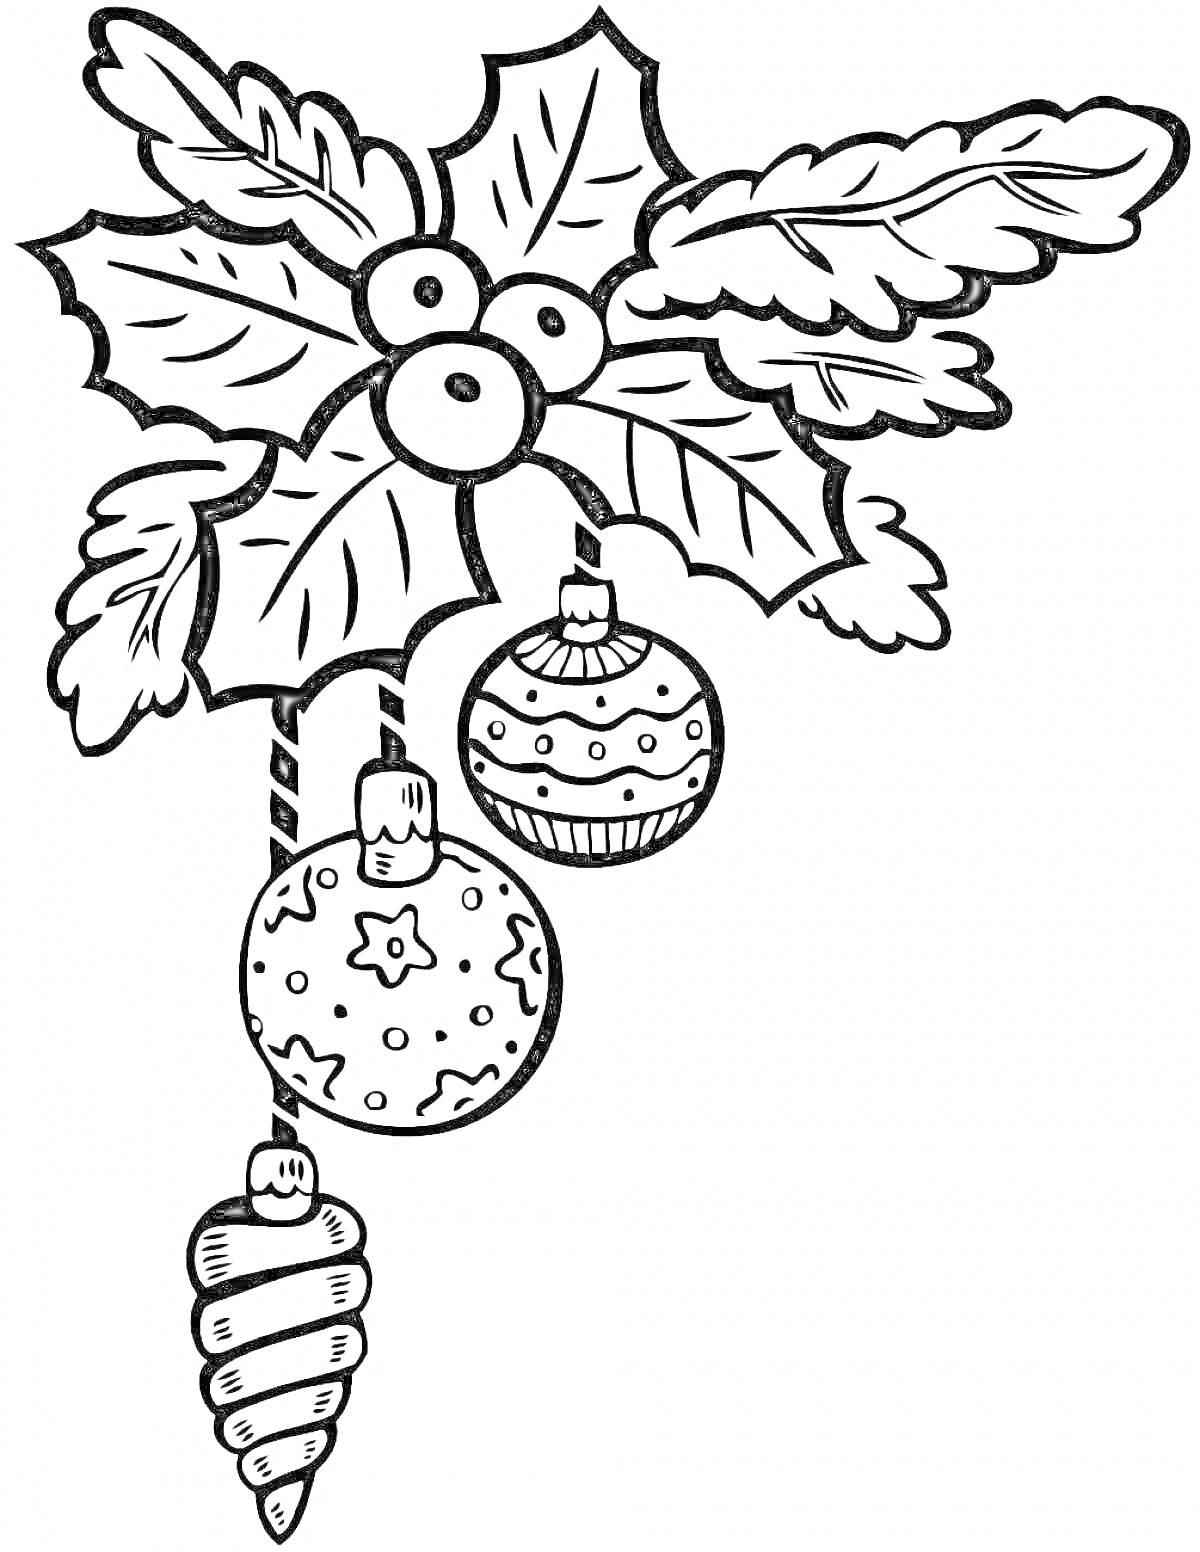 РаскраскаЕловая ветка с большими листьями, ягодами и тремя игрушками (шар, шар с узором, шишка)